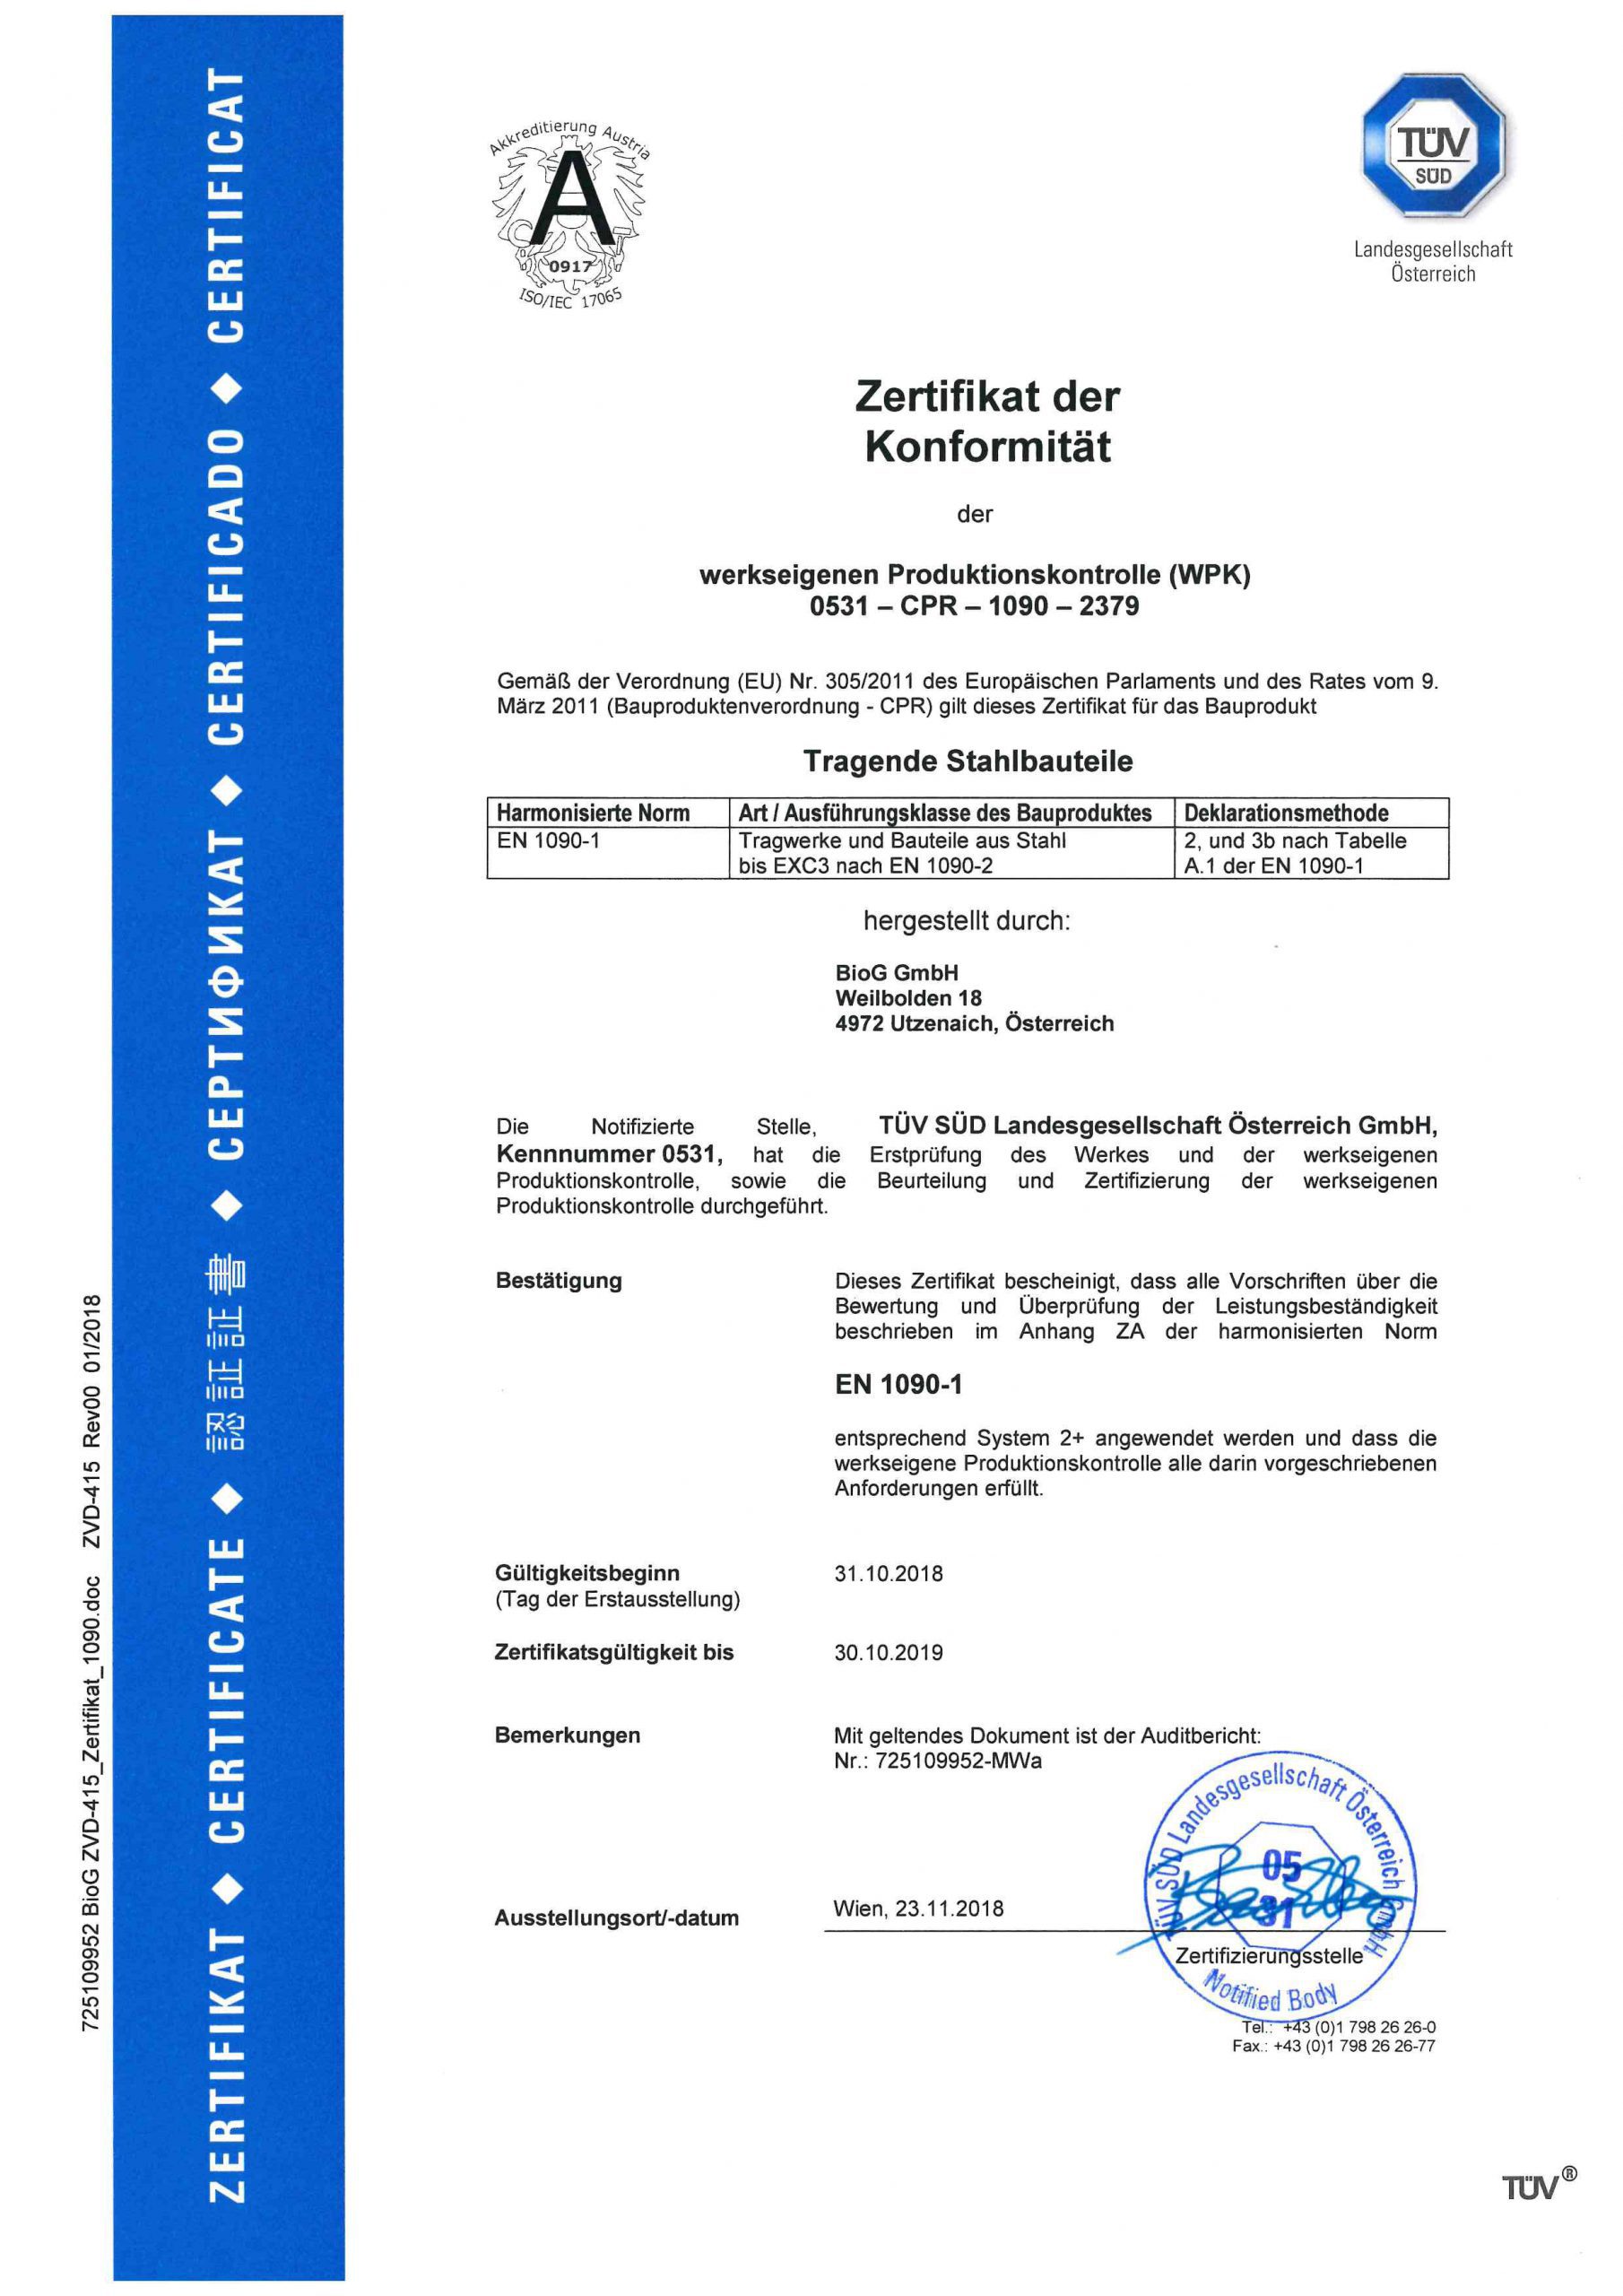 Zertifikat der Konformität - werkseigene Produktionskontrolle